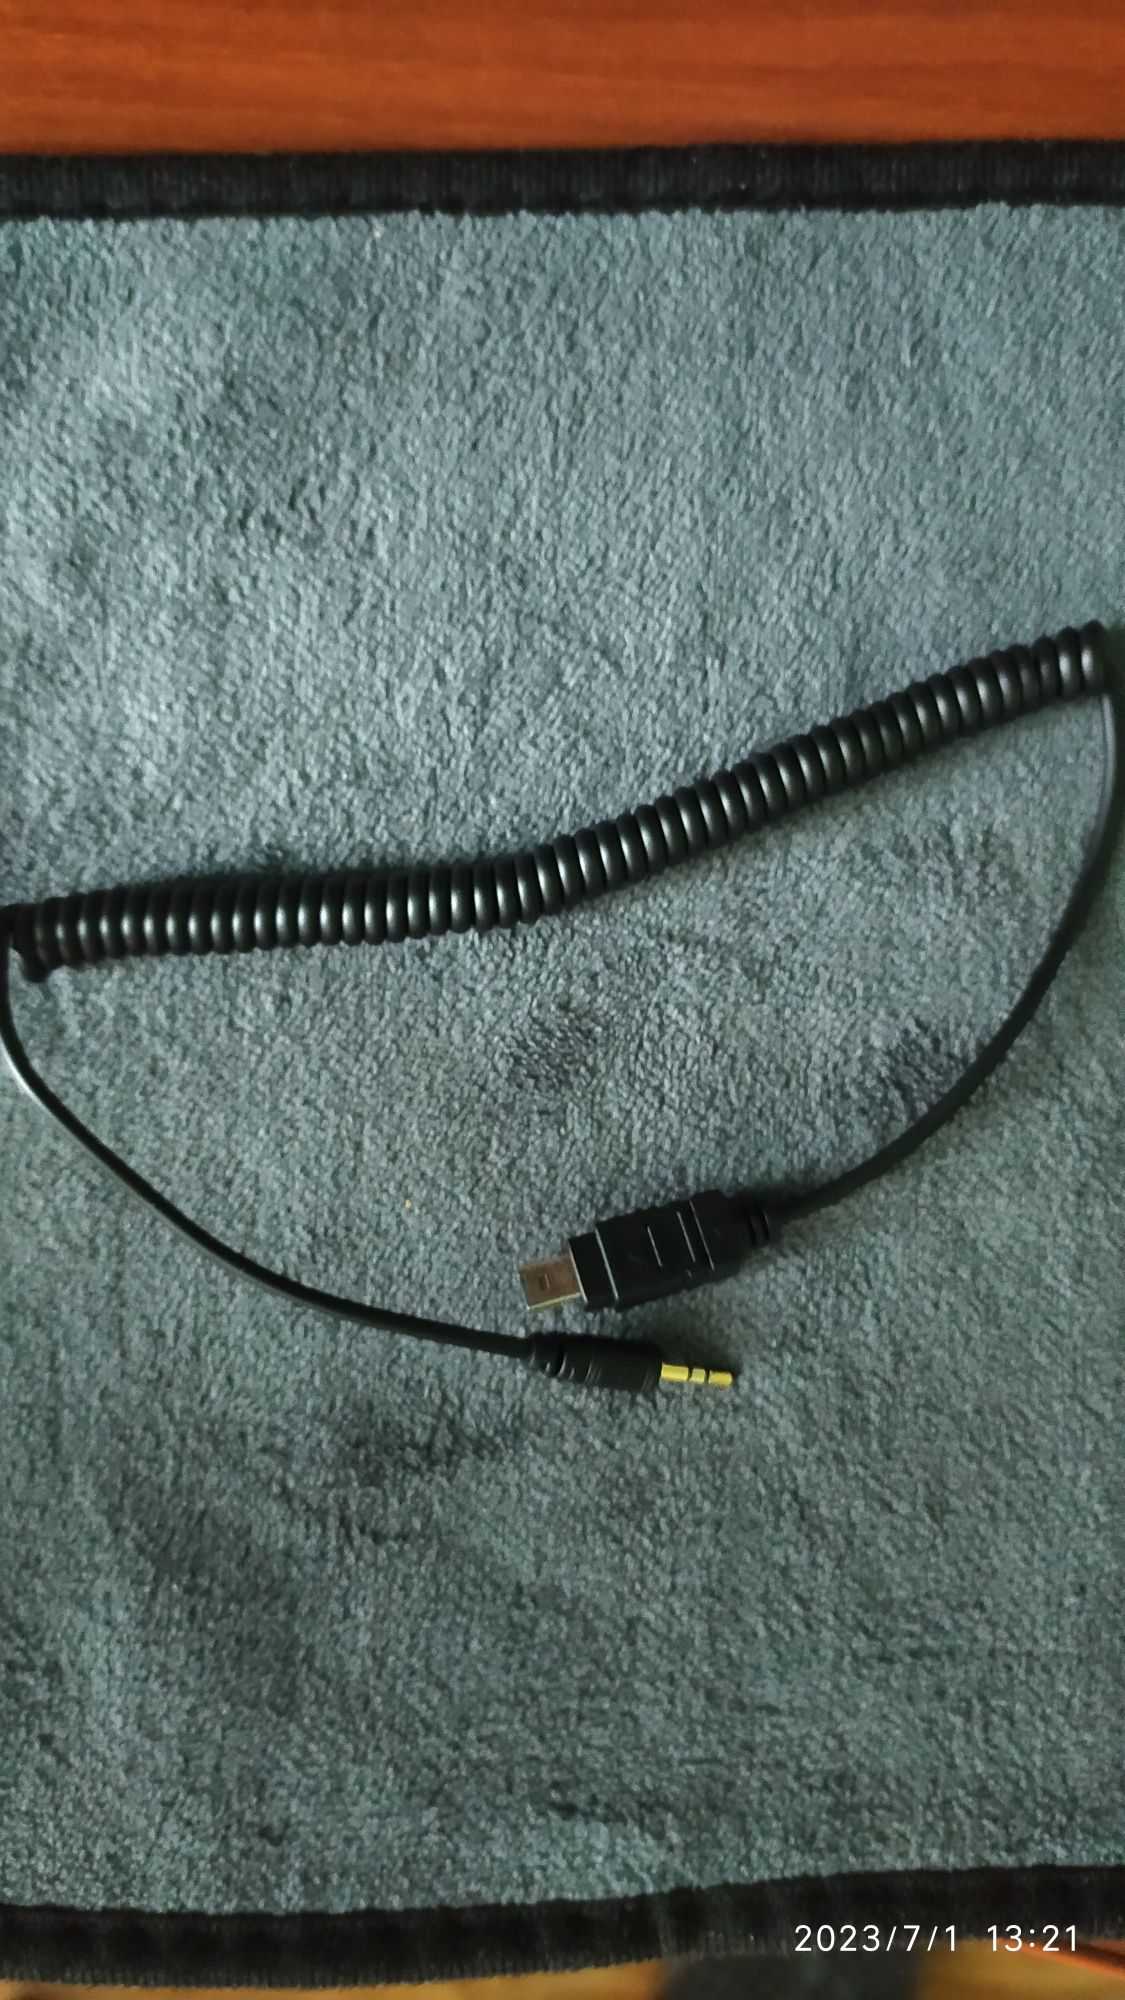 TRIGGER кабель О6 для Olympus